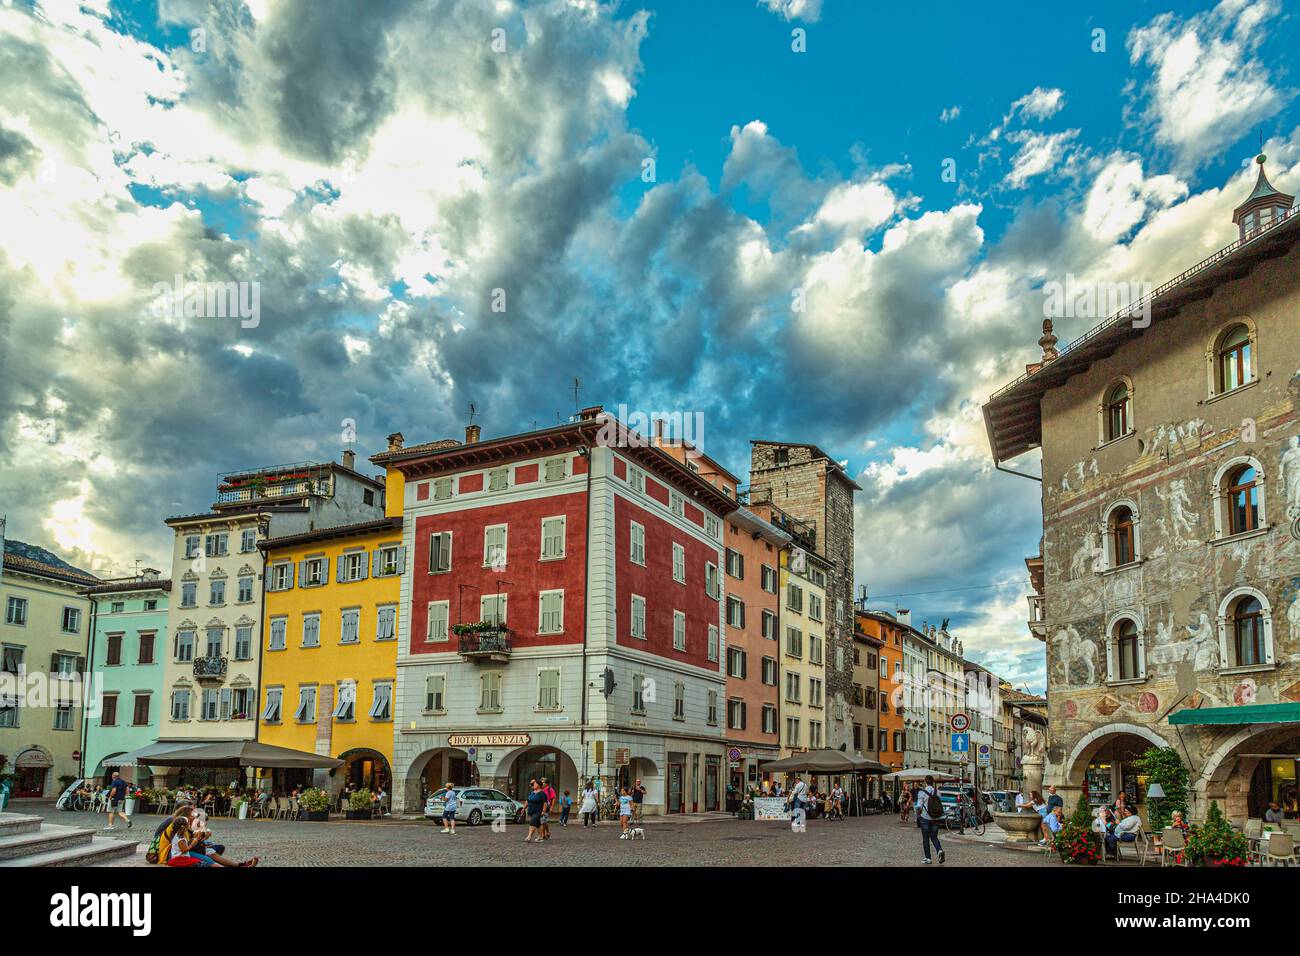 Fachadas de edificios antiguos en el centro histórico de la ciudad de Trento. Trento, provincia autónoma de Trento, Trentino-Alto Adige, Italia, Europa Foto de stock